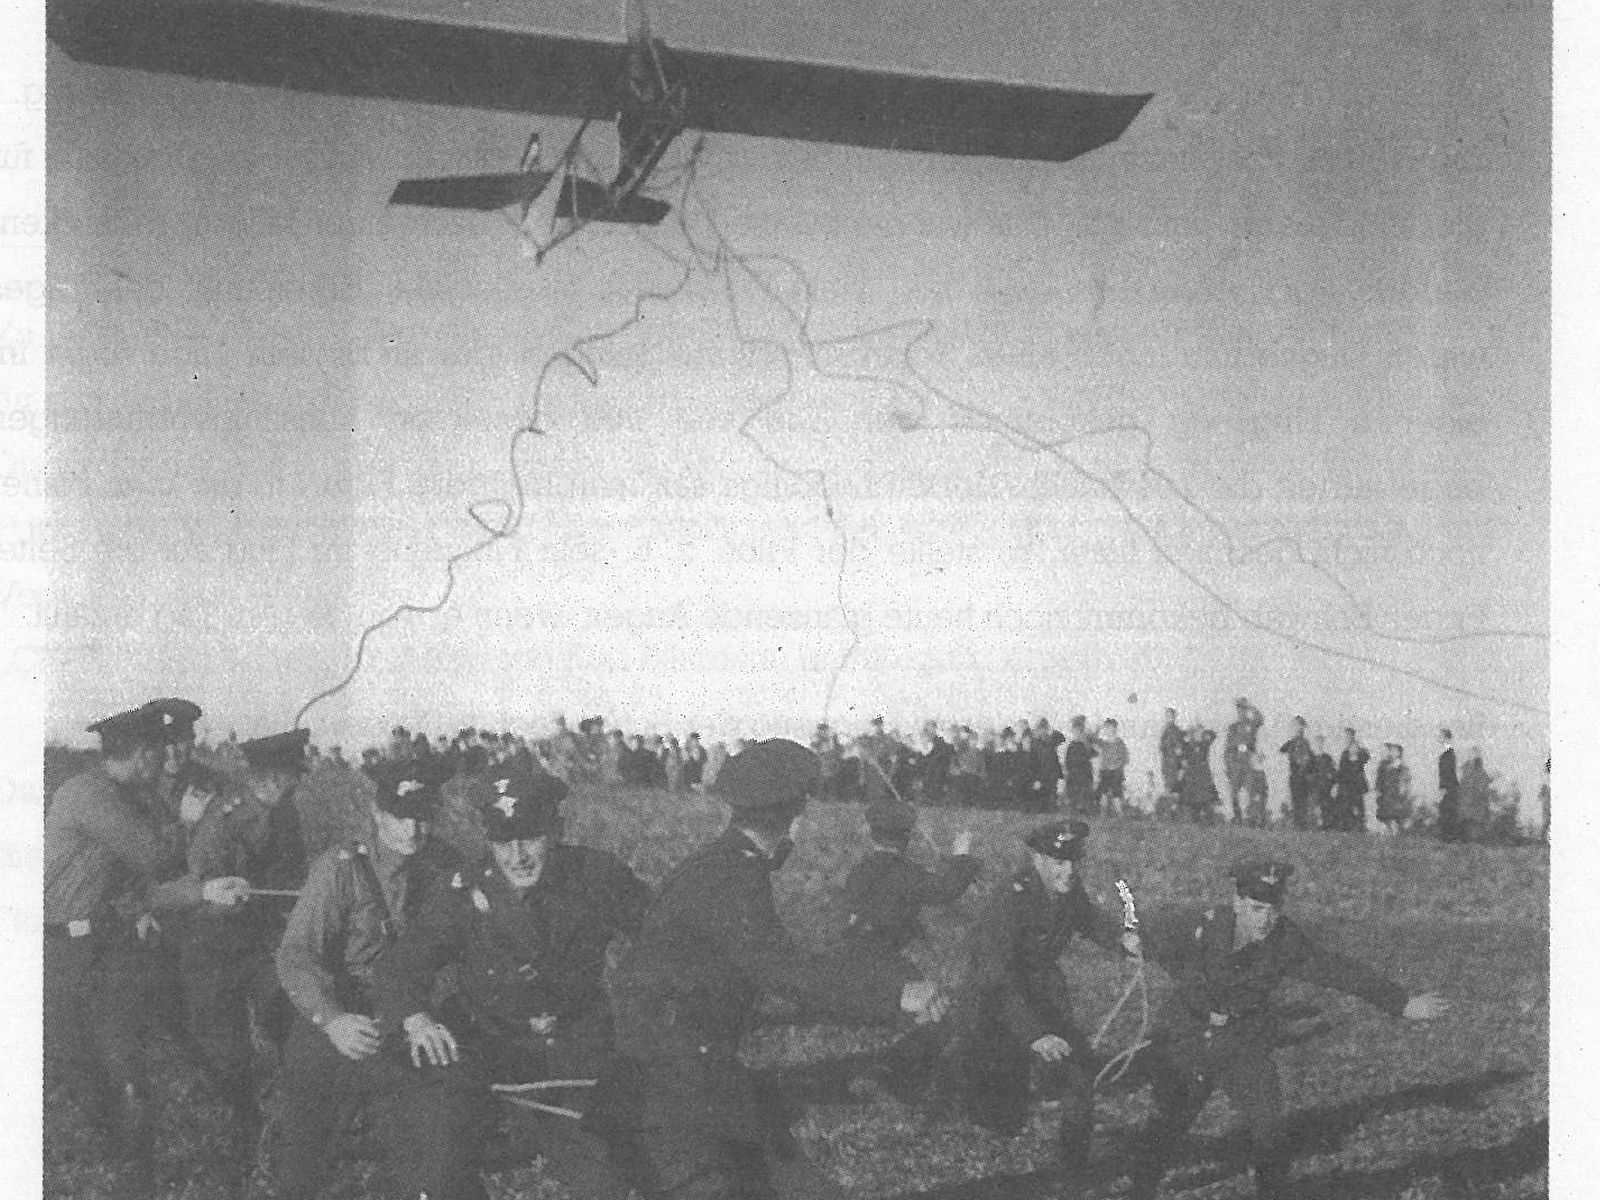  Schopflocher Skizzen beim Flugtag 1934 - Bild wird mit einem klick vergrößert 